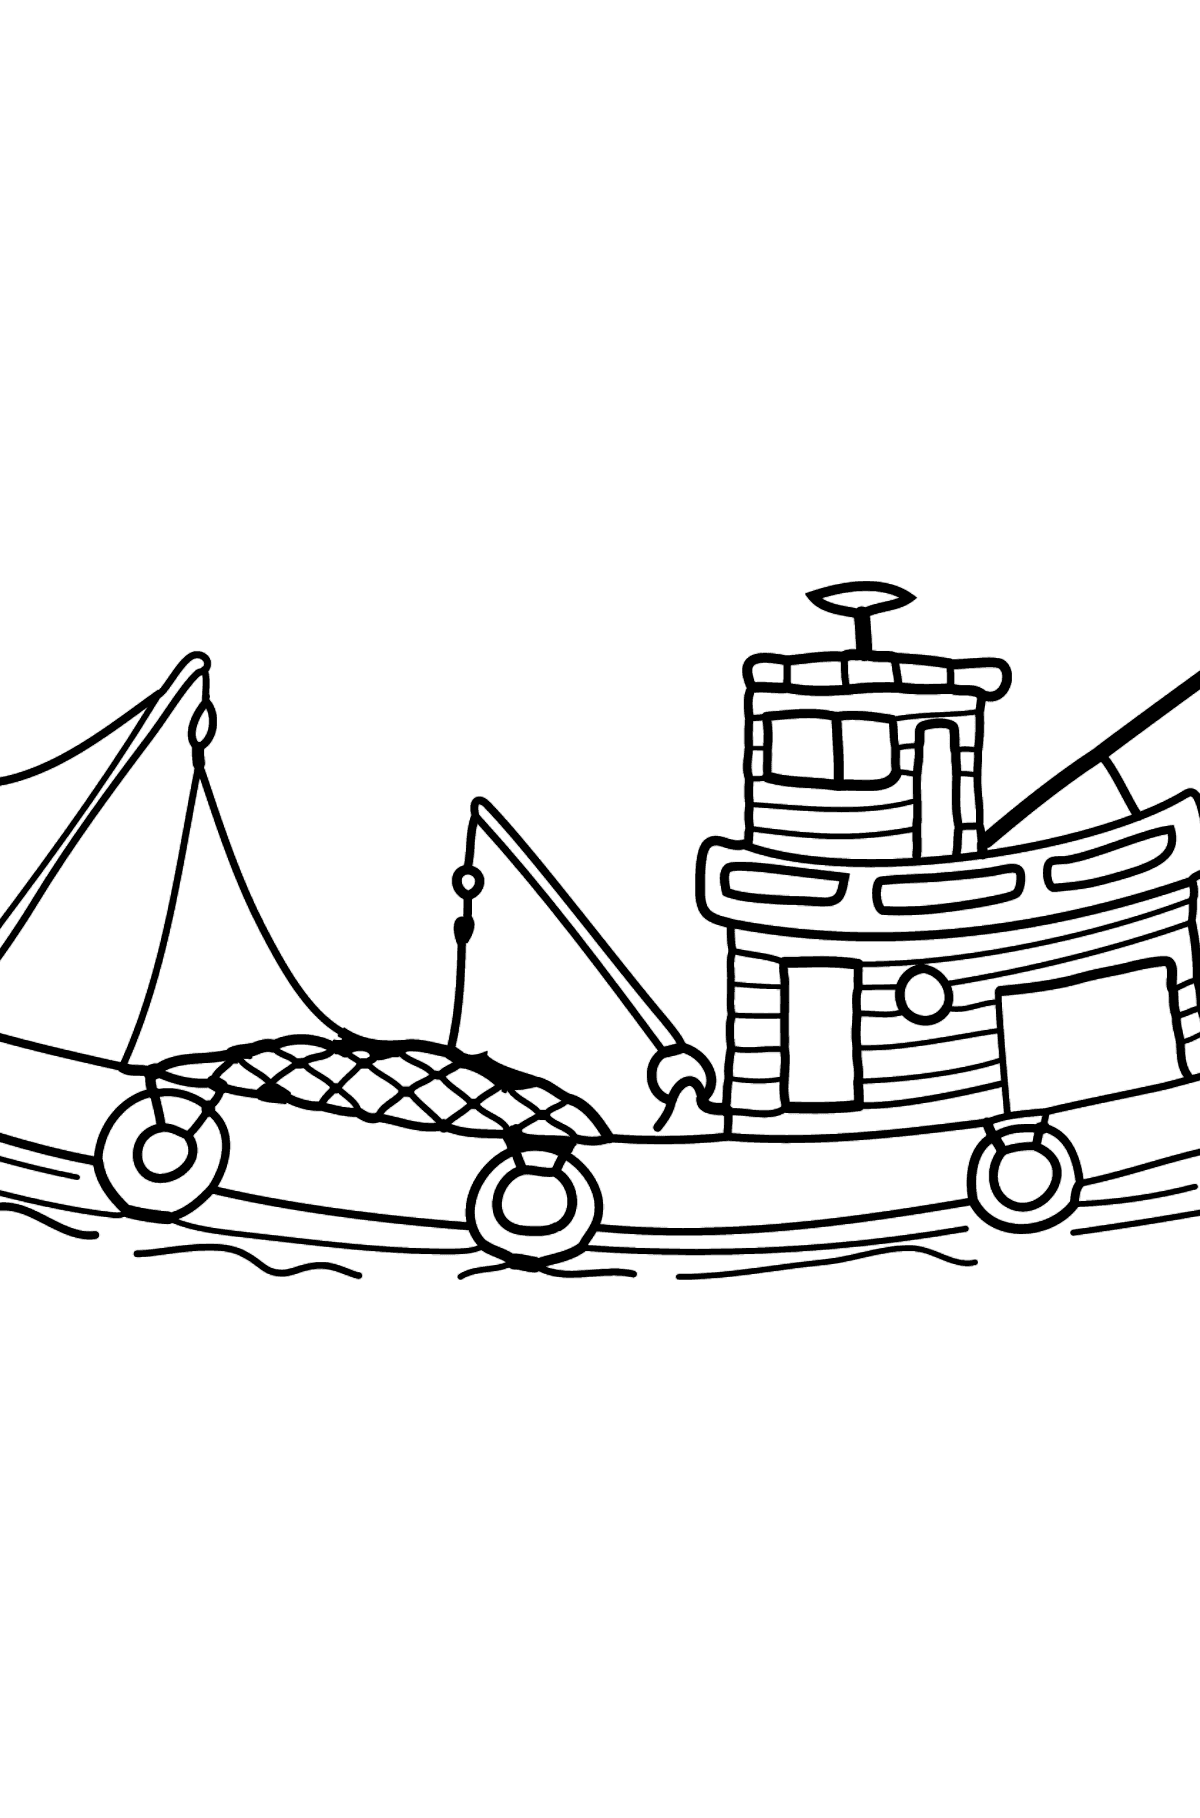 Раскраска рыбацкий корабль - Картинки для Детей